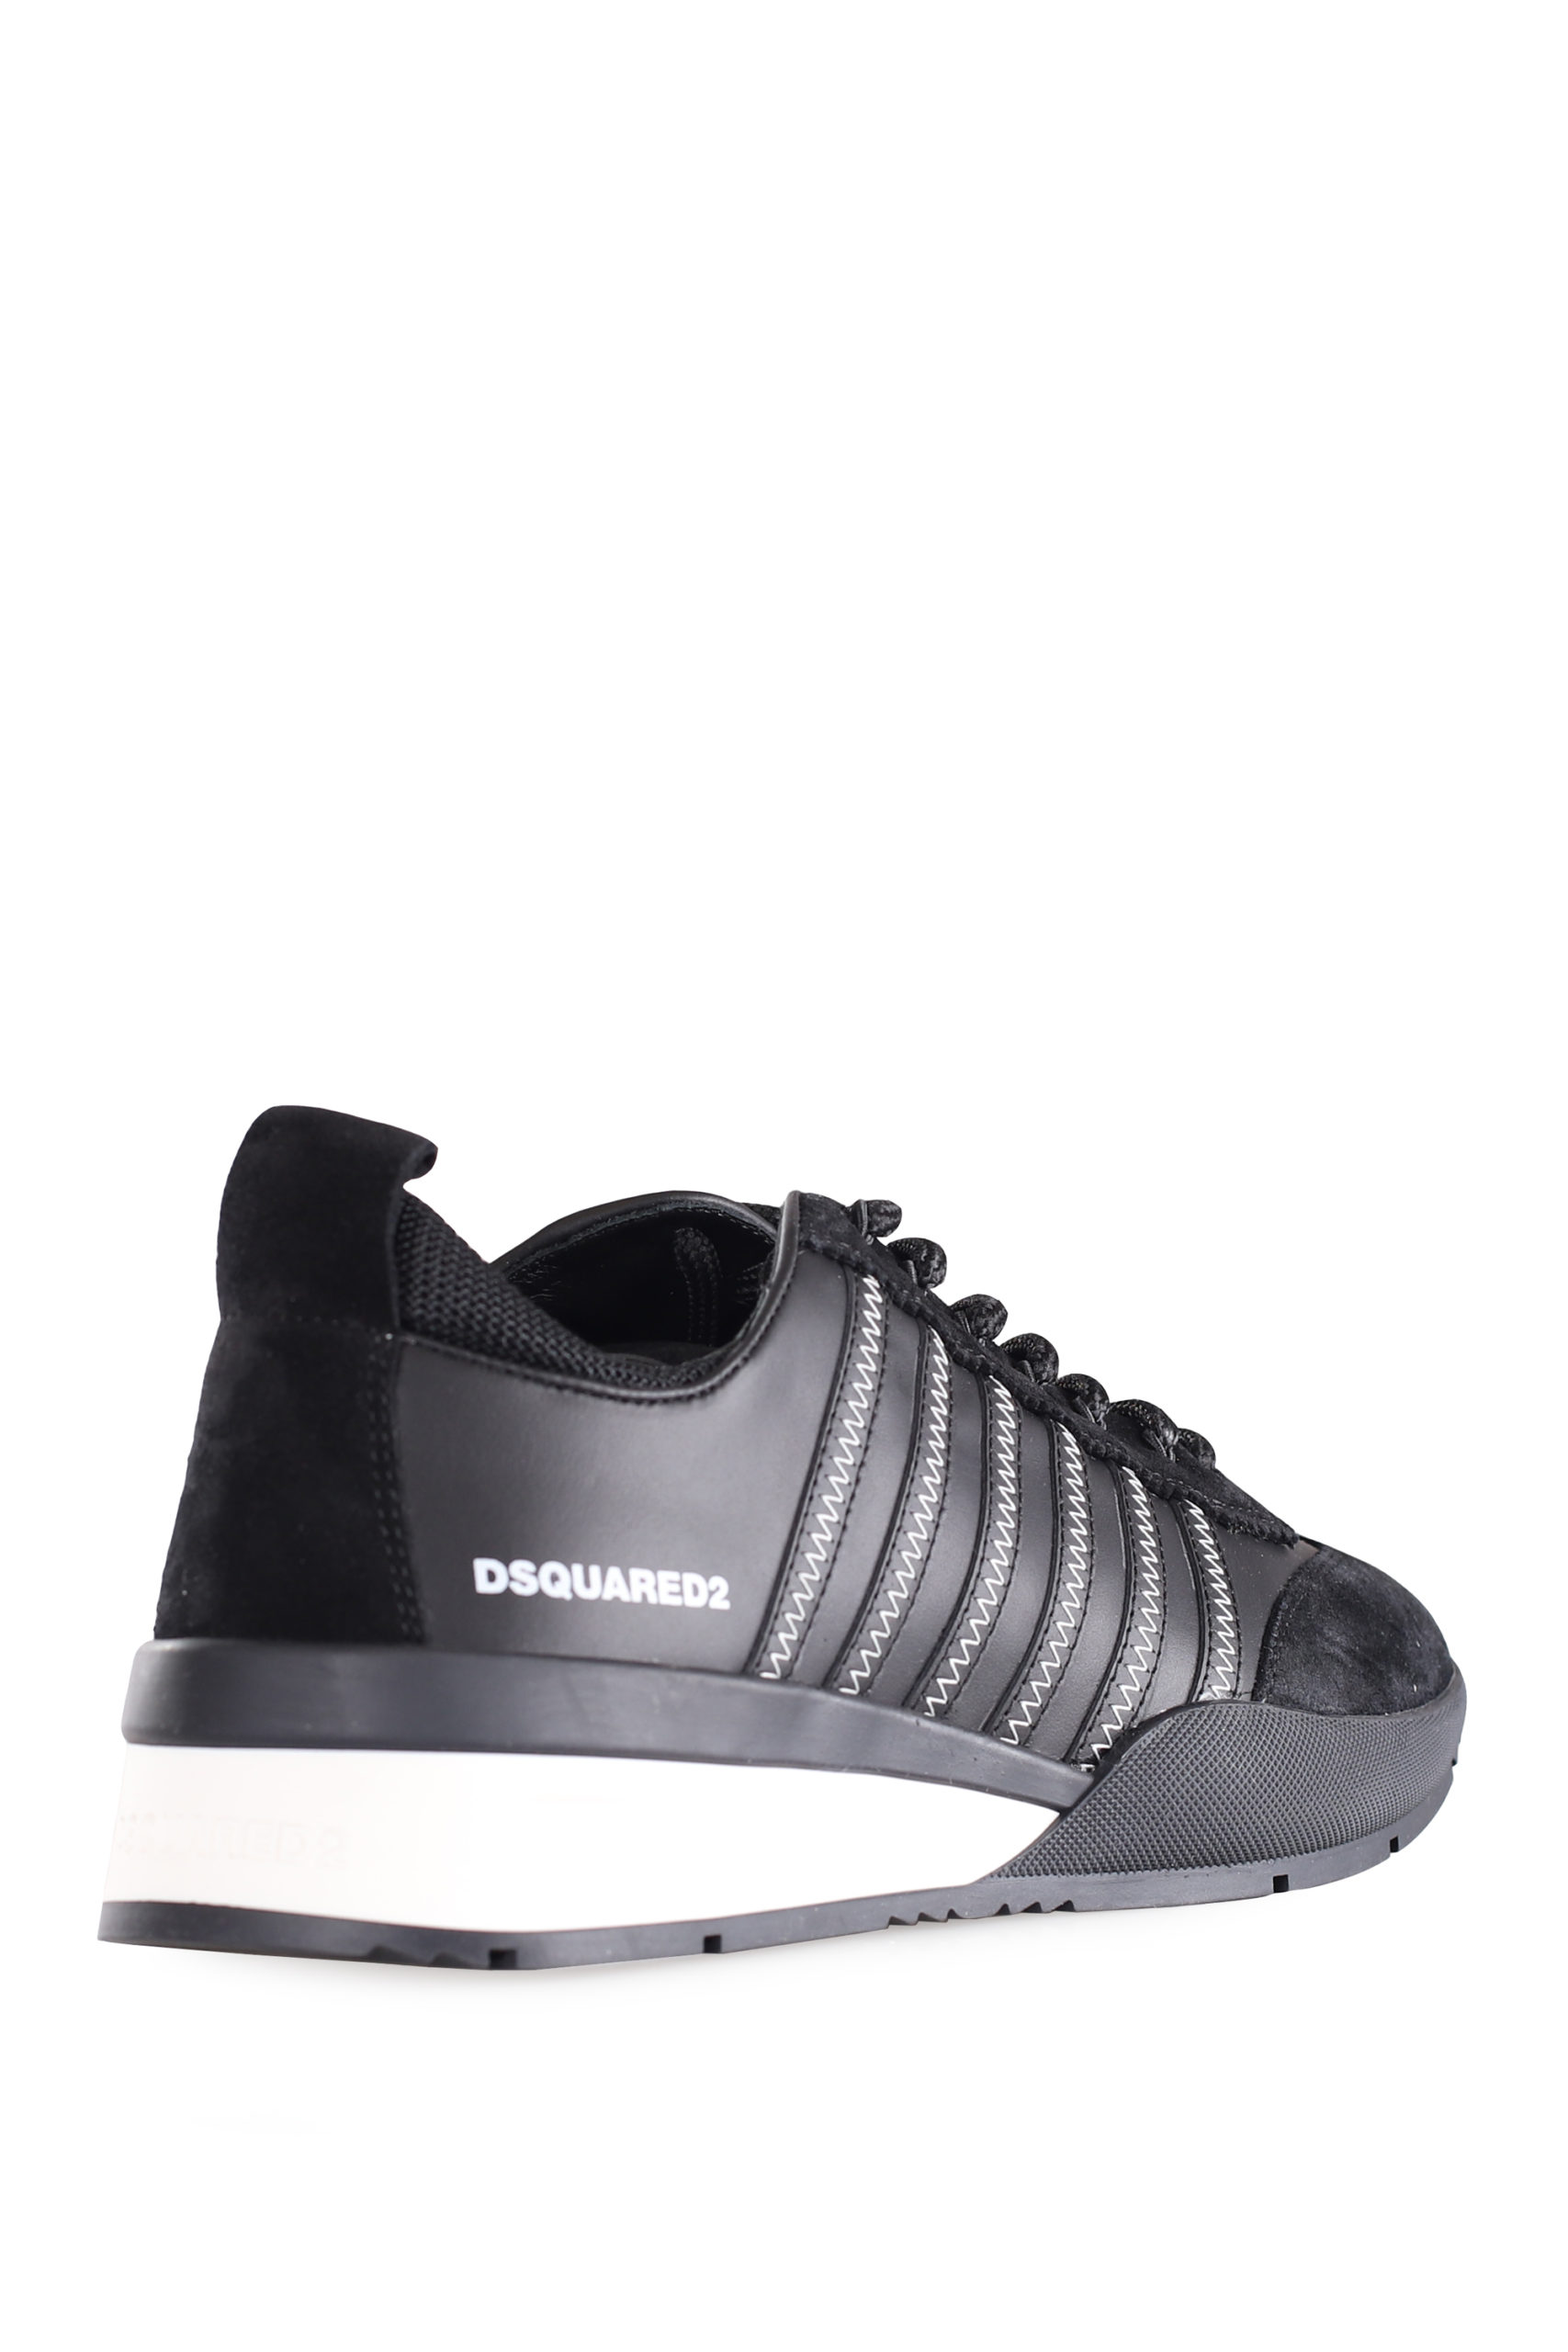 Sabio maduro desinfectar Dsquared2 - Zapatillas negras con lineas negras y logo blanco pequeño - BLS  Fashion